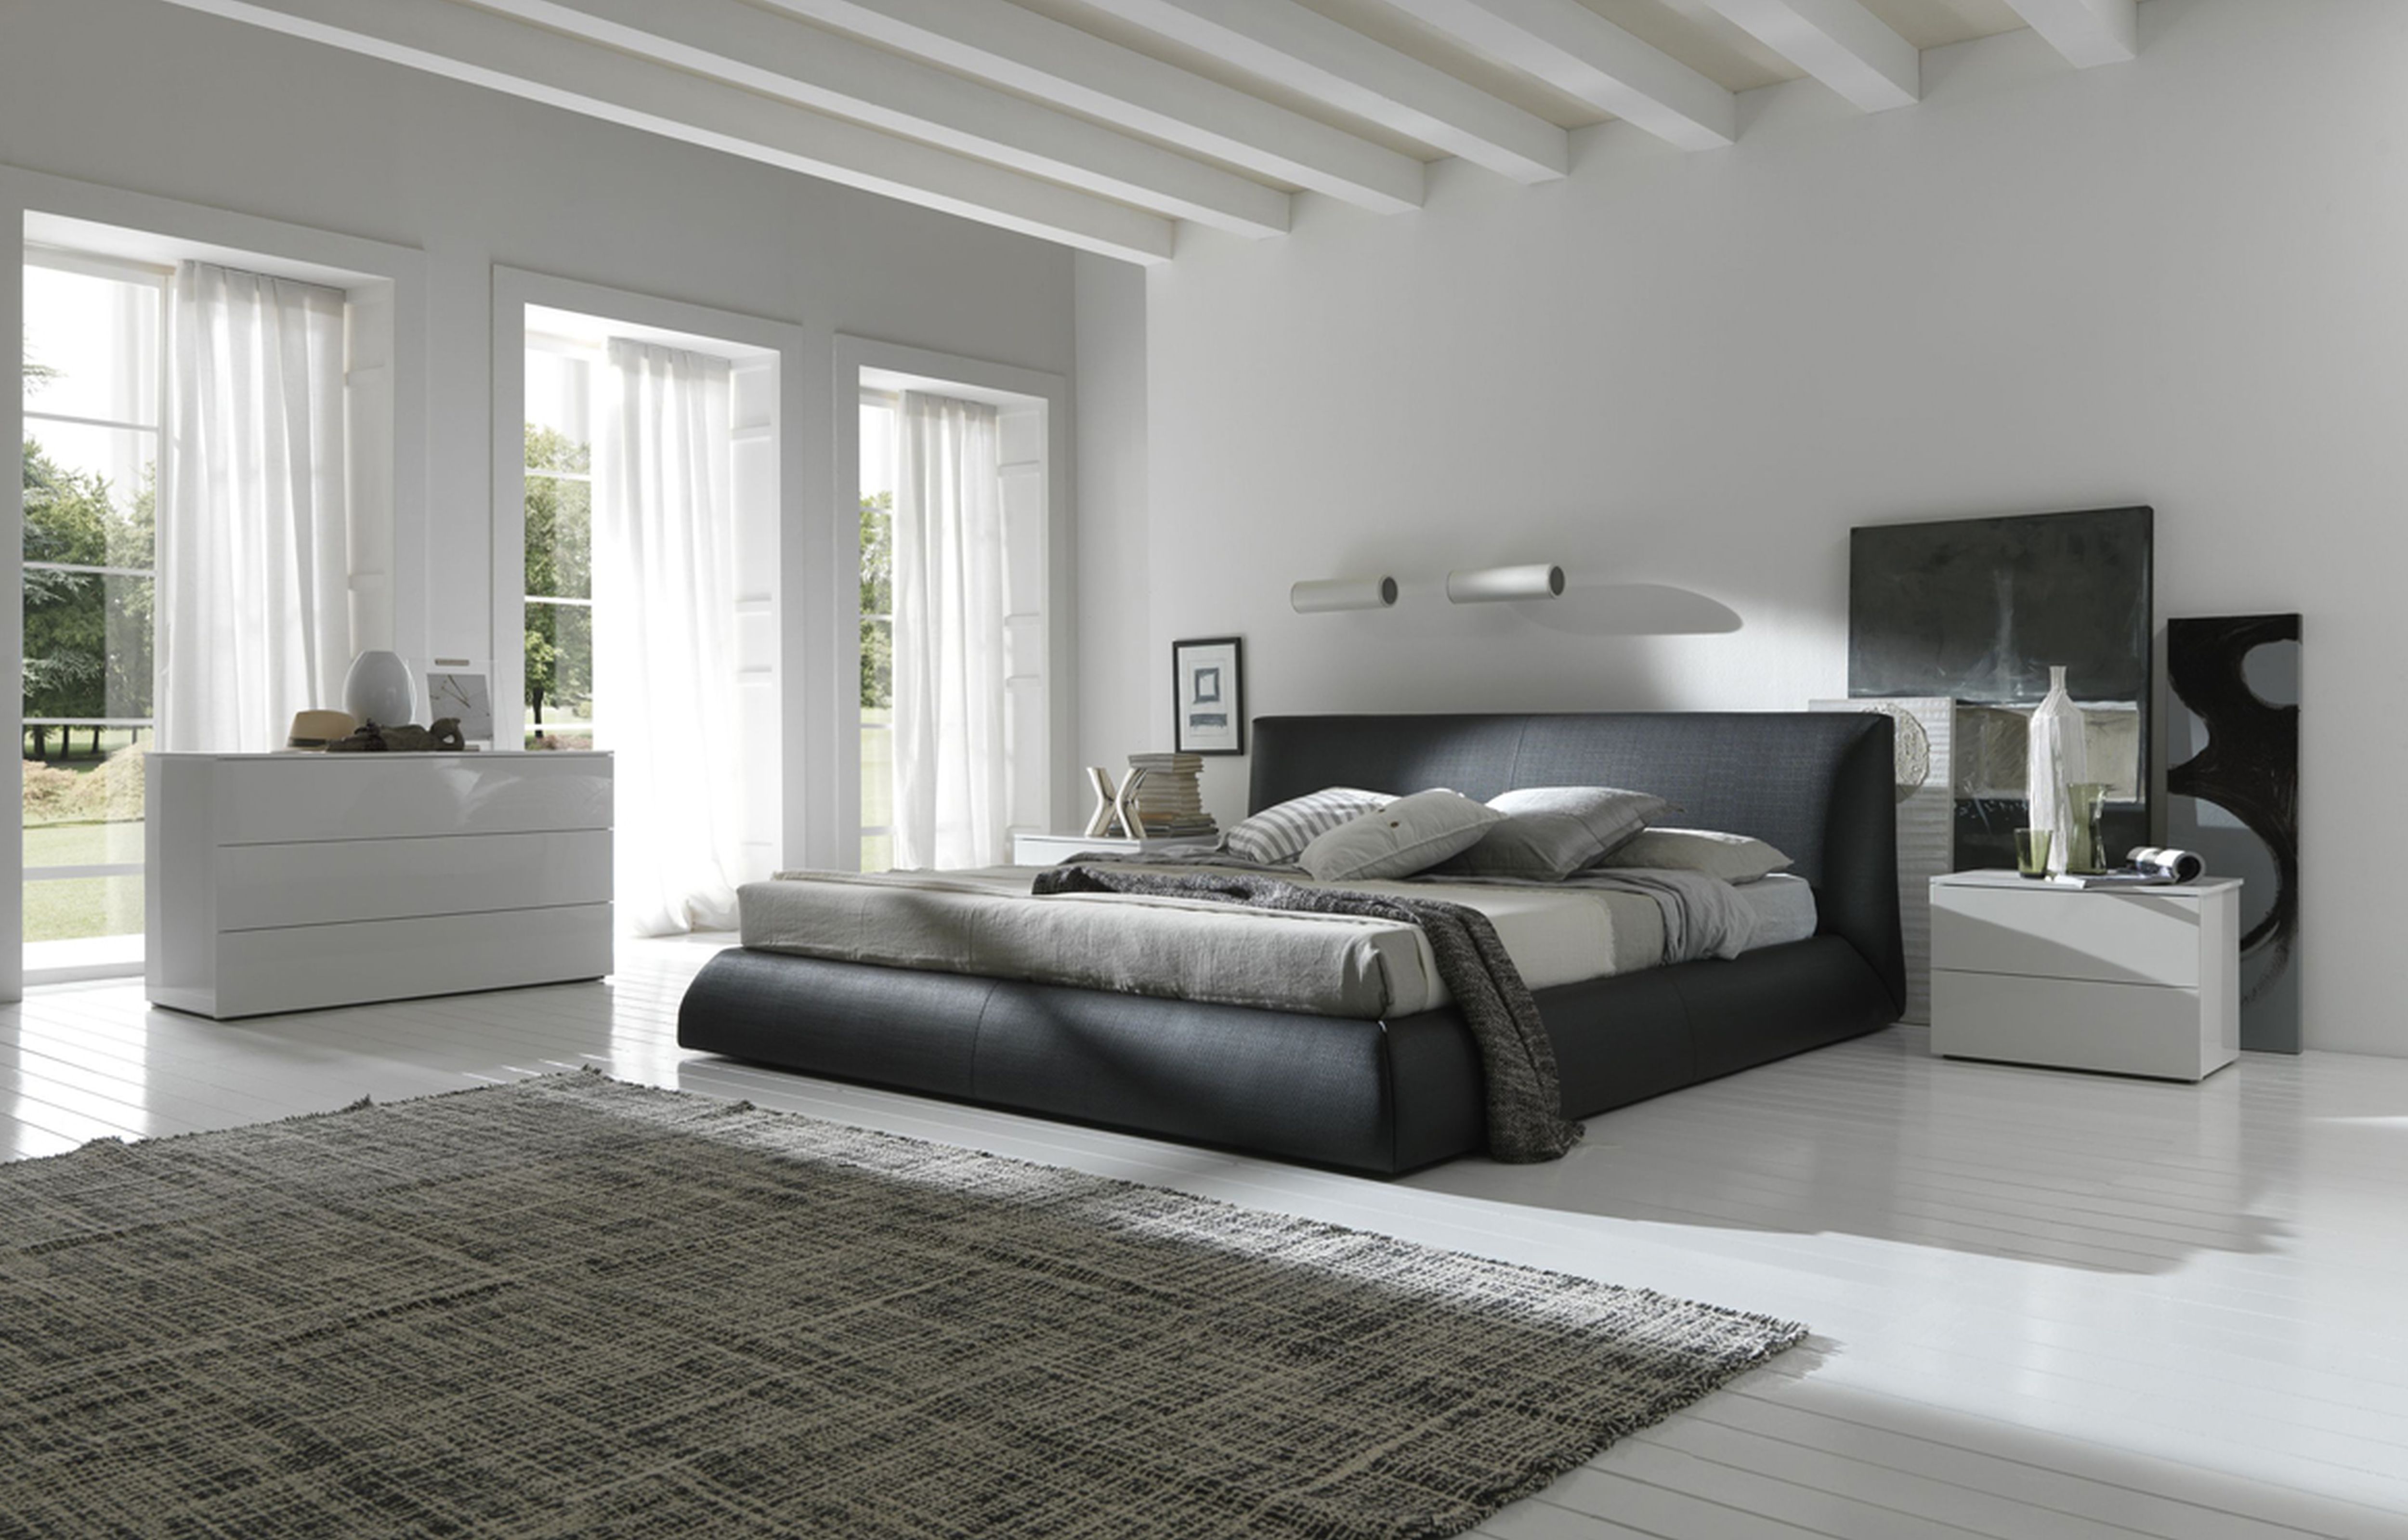 modern bedroom furniture styles